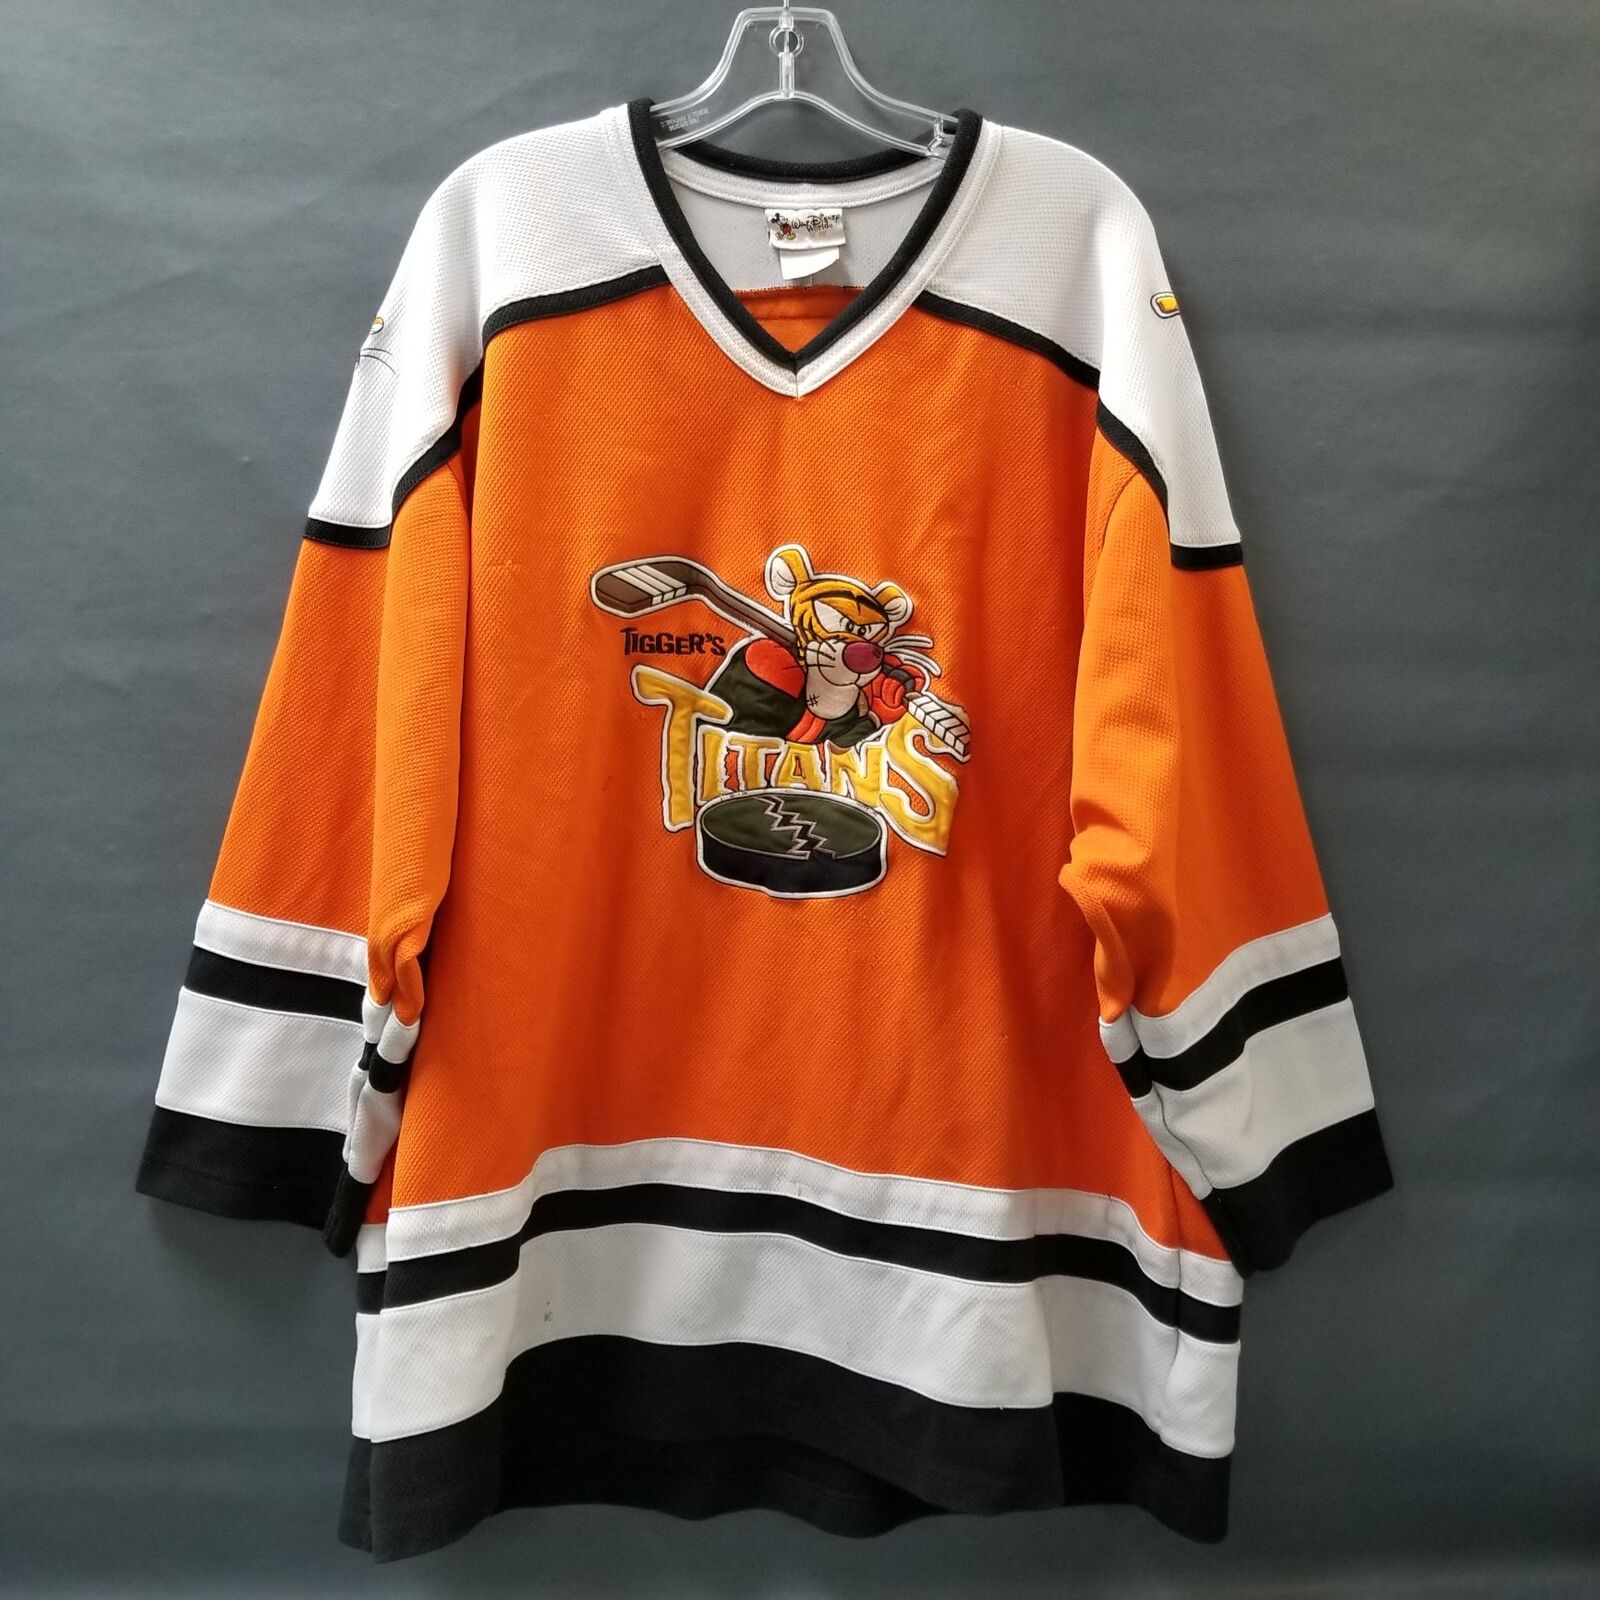 Vintage Walt Disney World Tigger's Titans Orange Hockey Jersey Adult Sz XXL